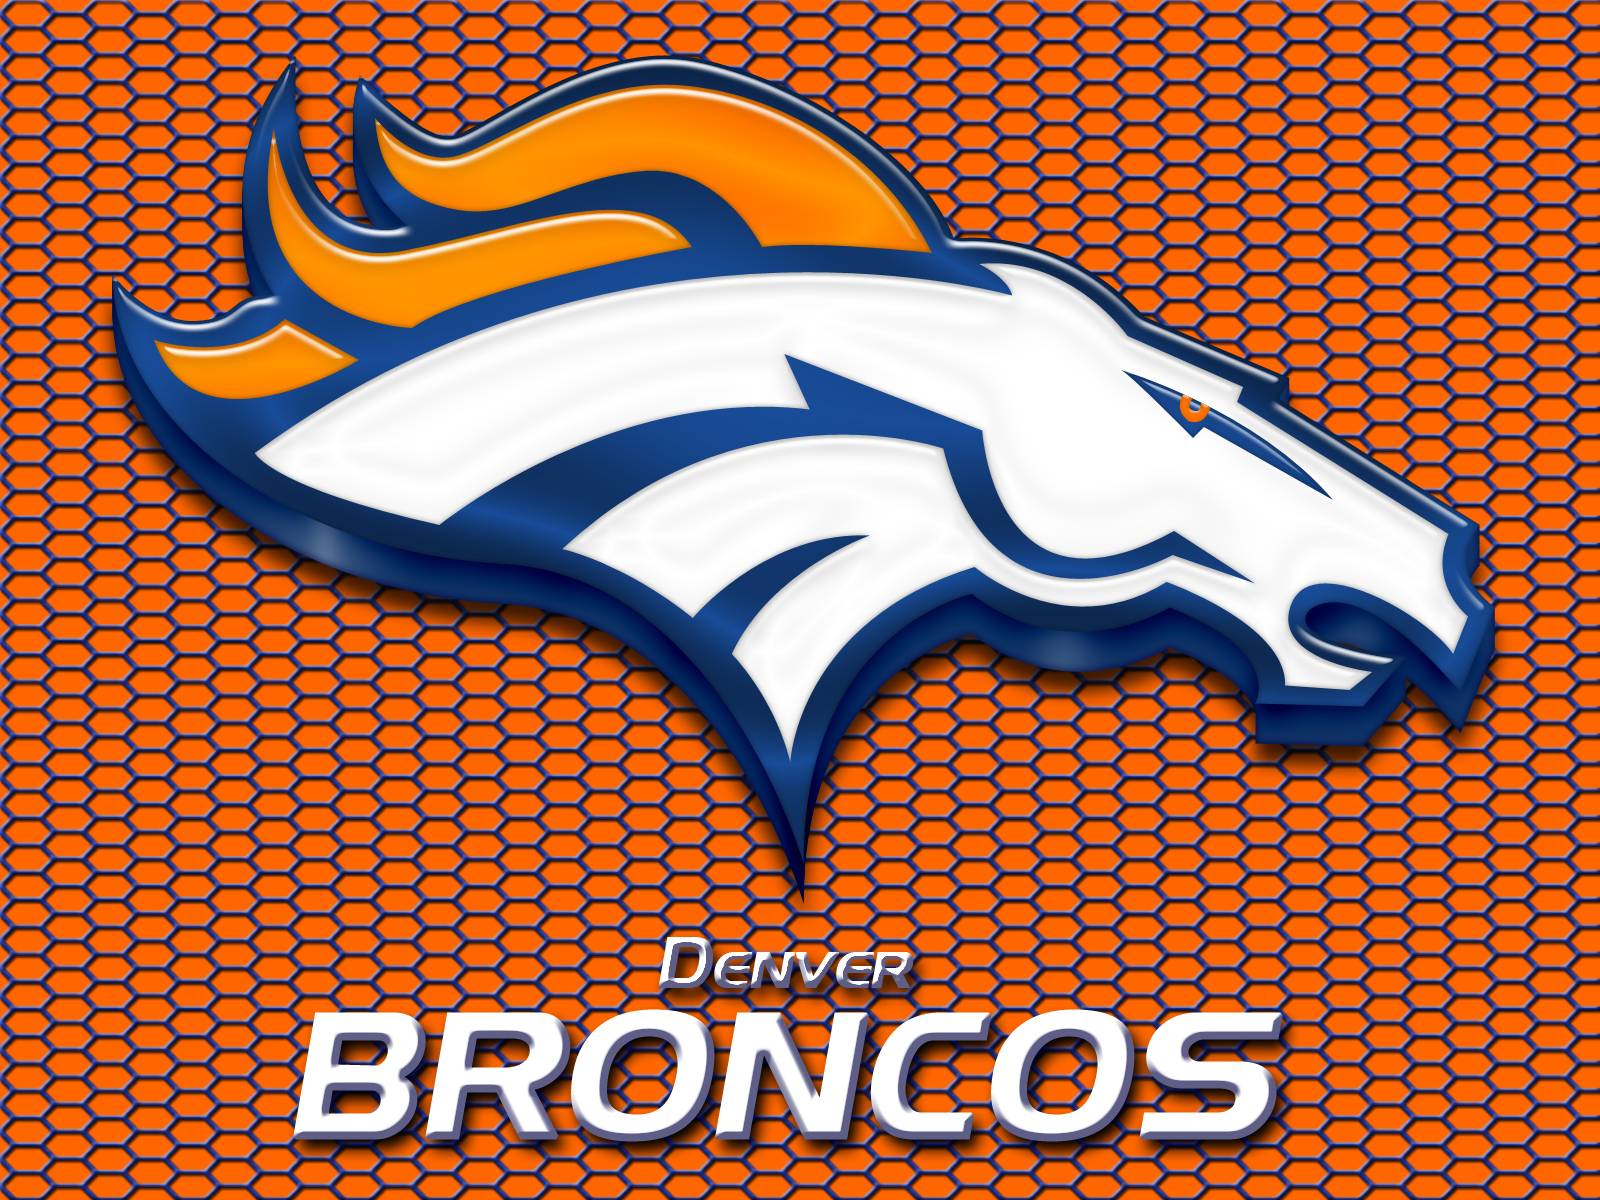 Denver Broncos Wallpaper Free